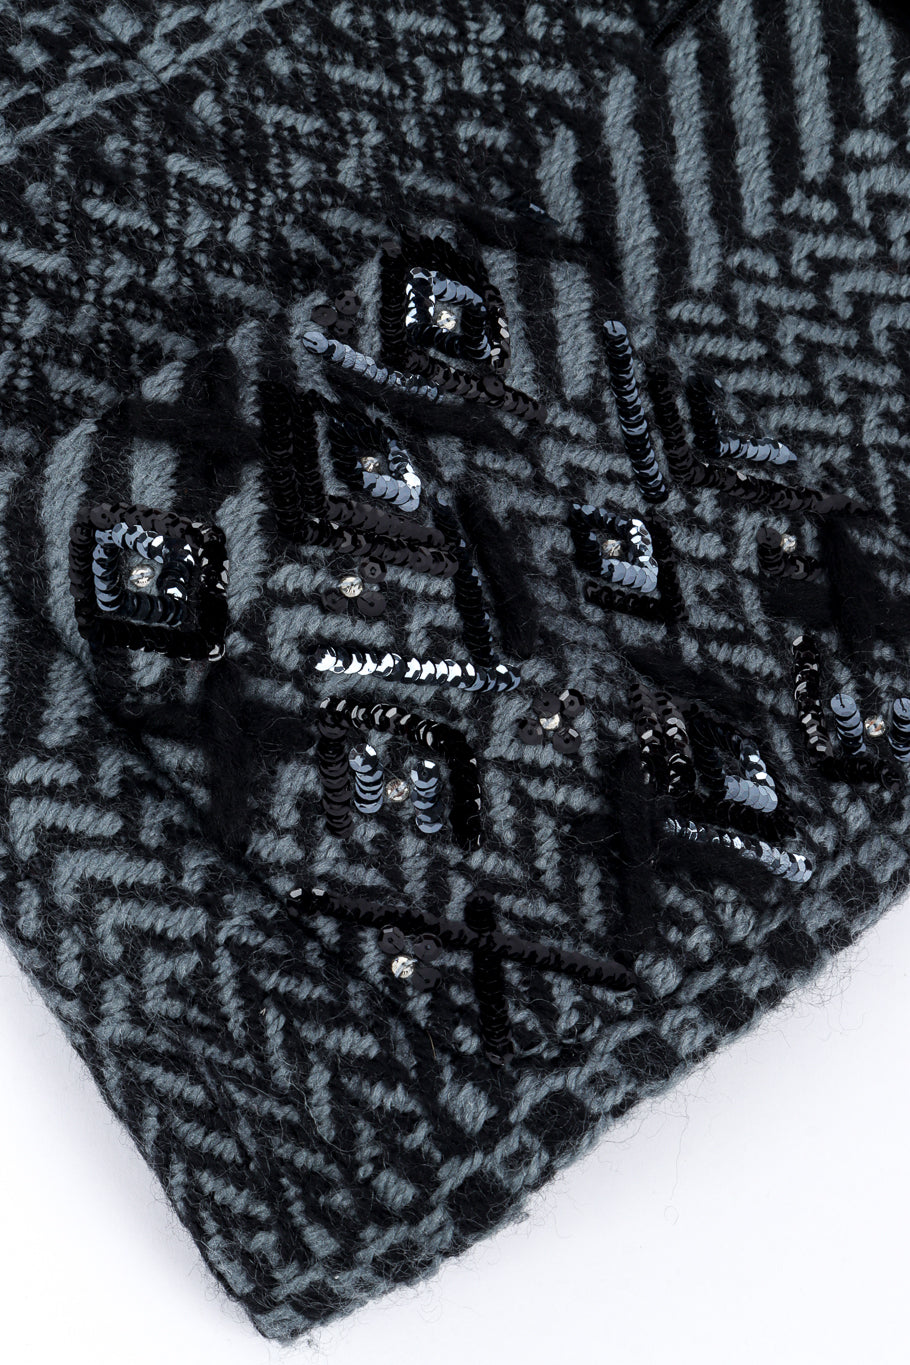 Chanel 2000 F/W Knit Wool Jacket sequin pocket closeup @recess la